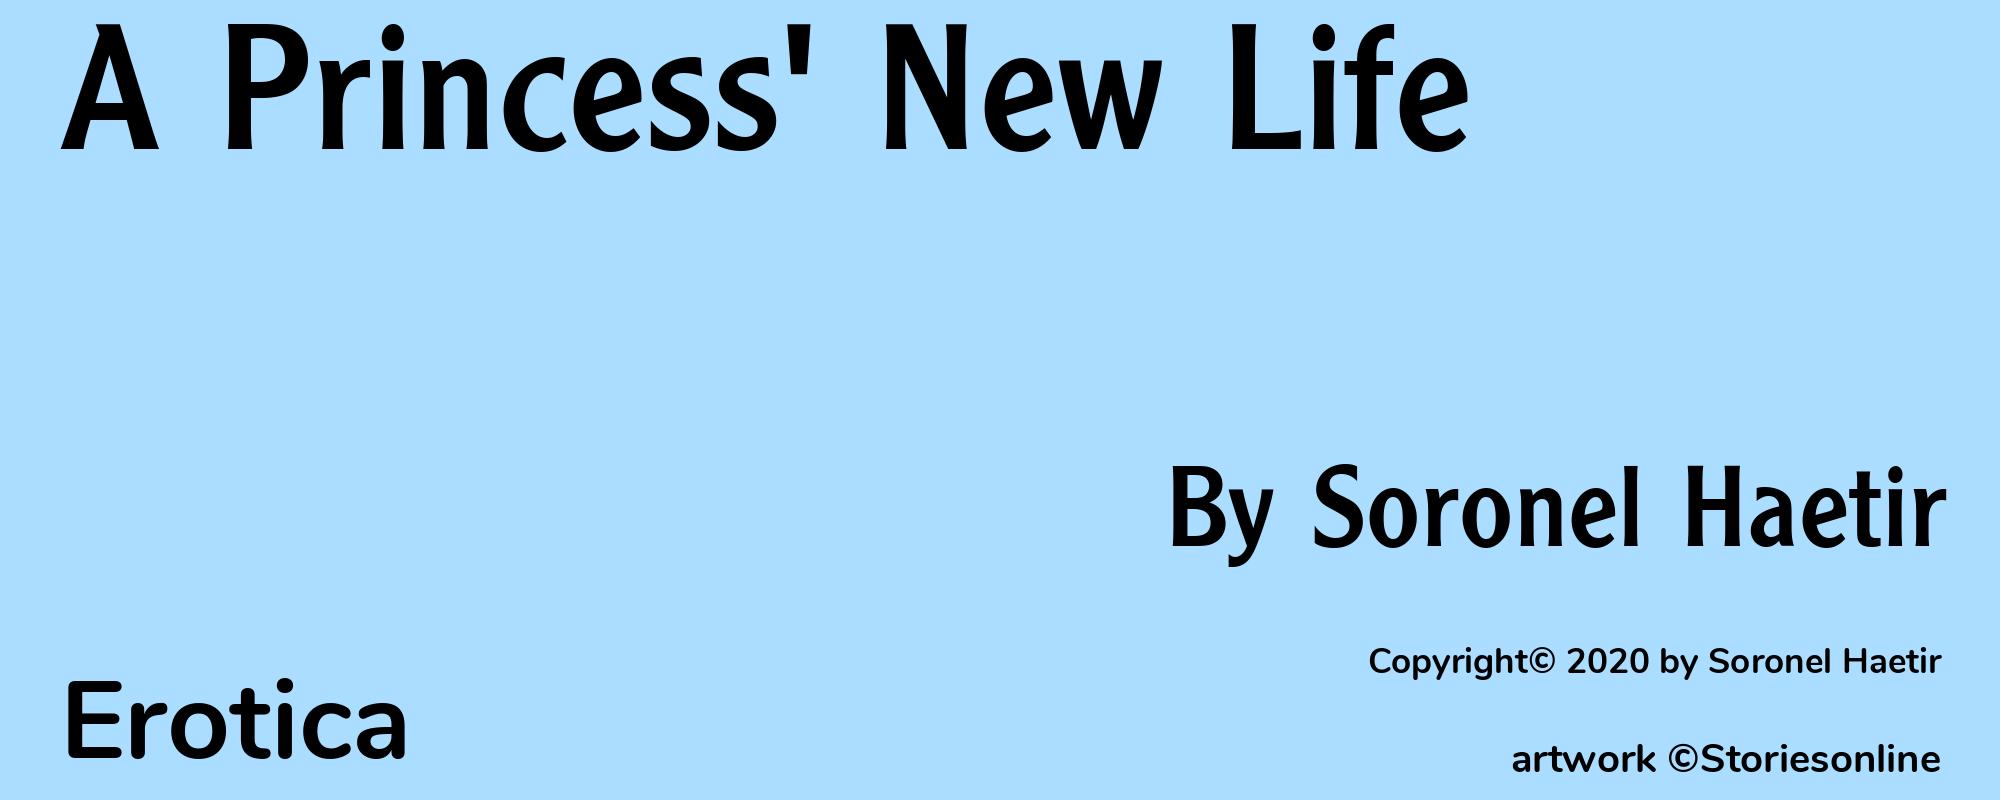 A Princess' New Life - Cover